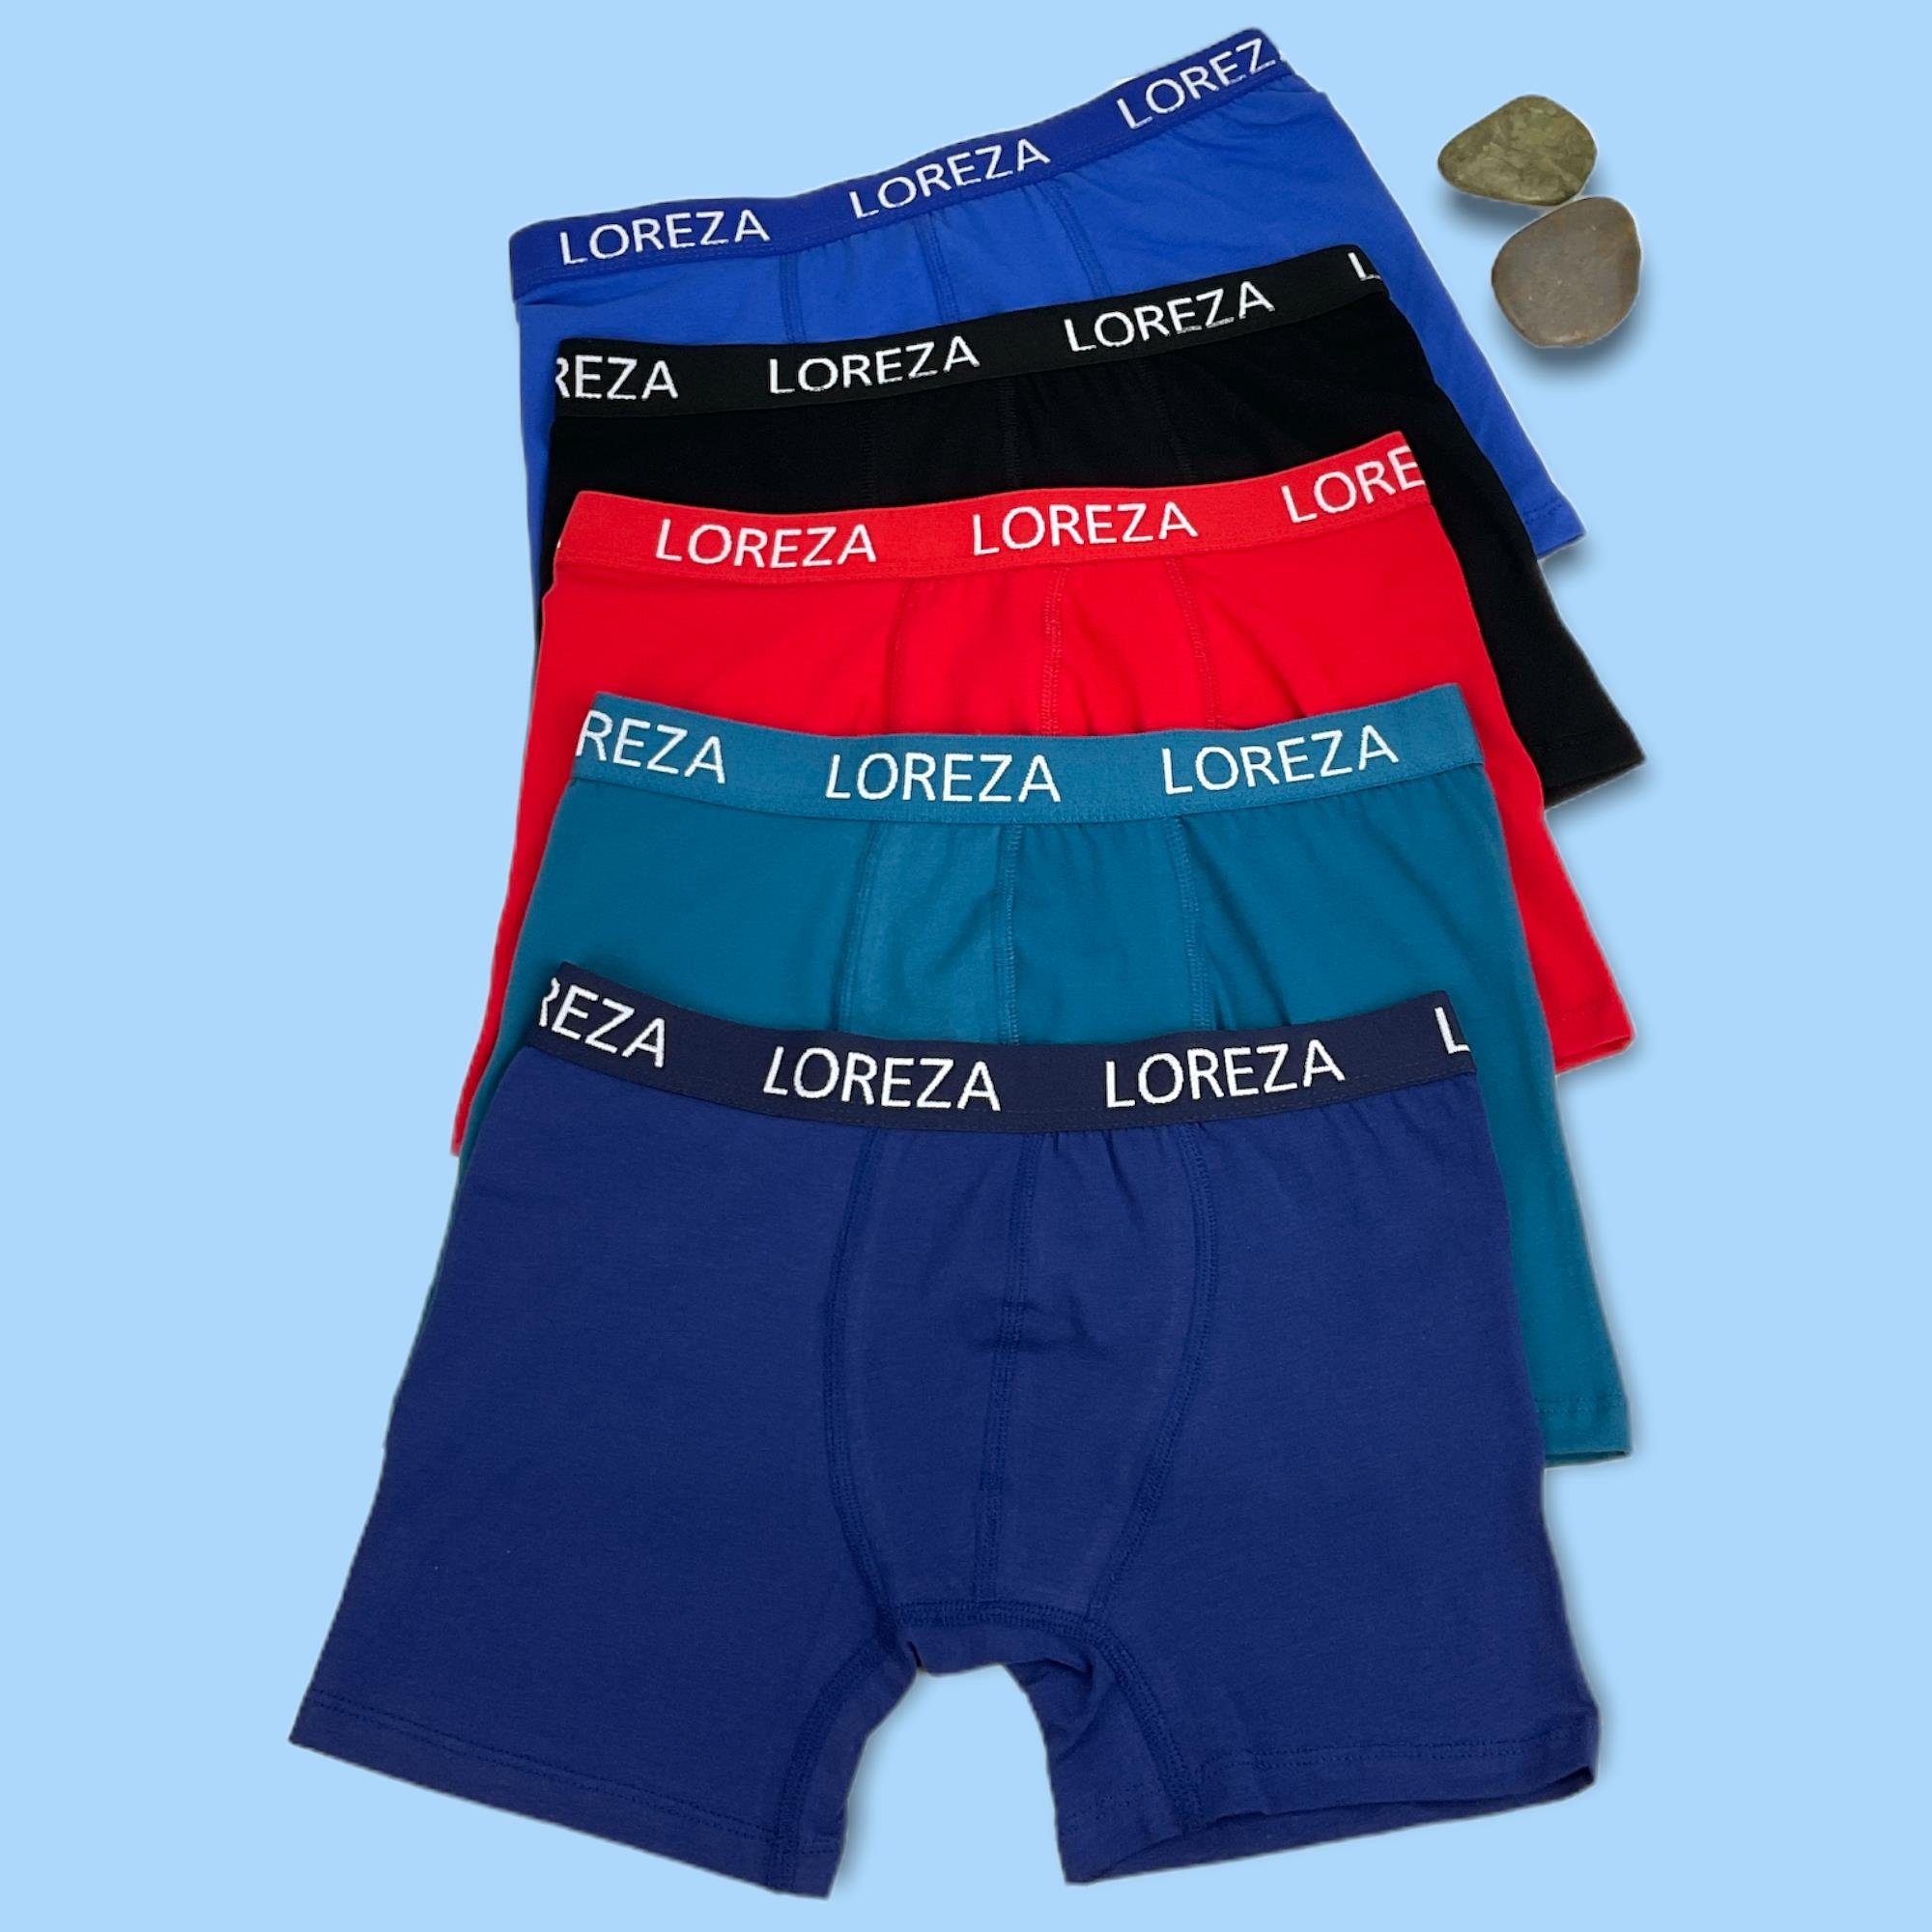 92-170 LOREZA ® 10 Jungen Boxershorts aus Baumwolle Gr 